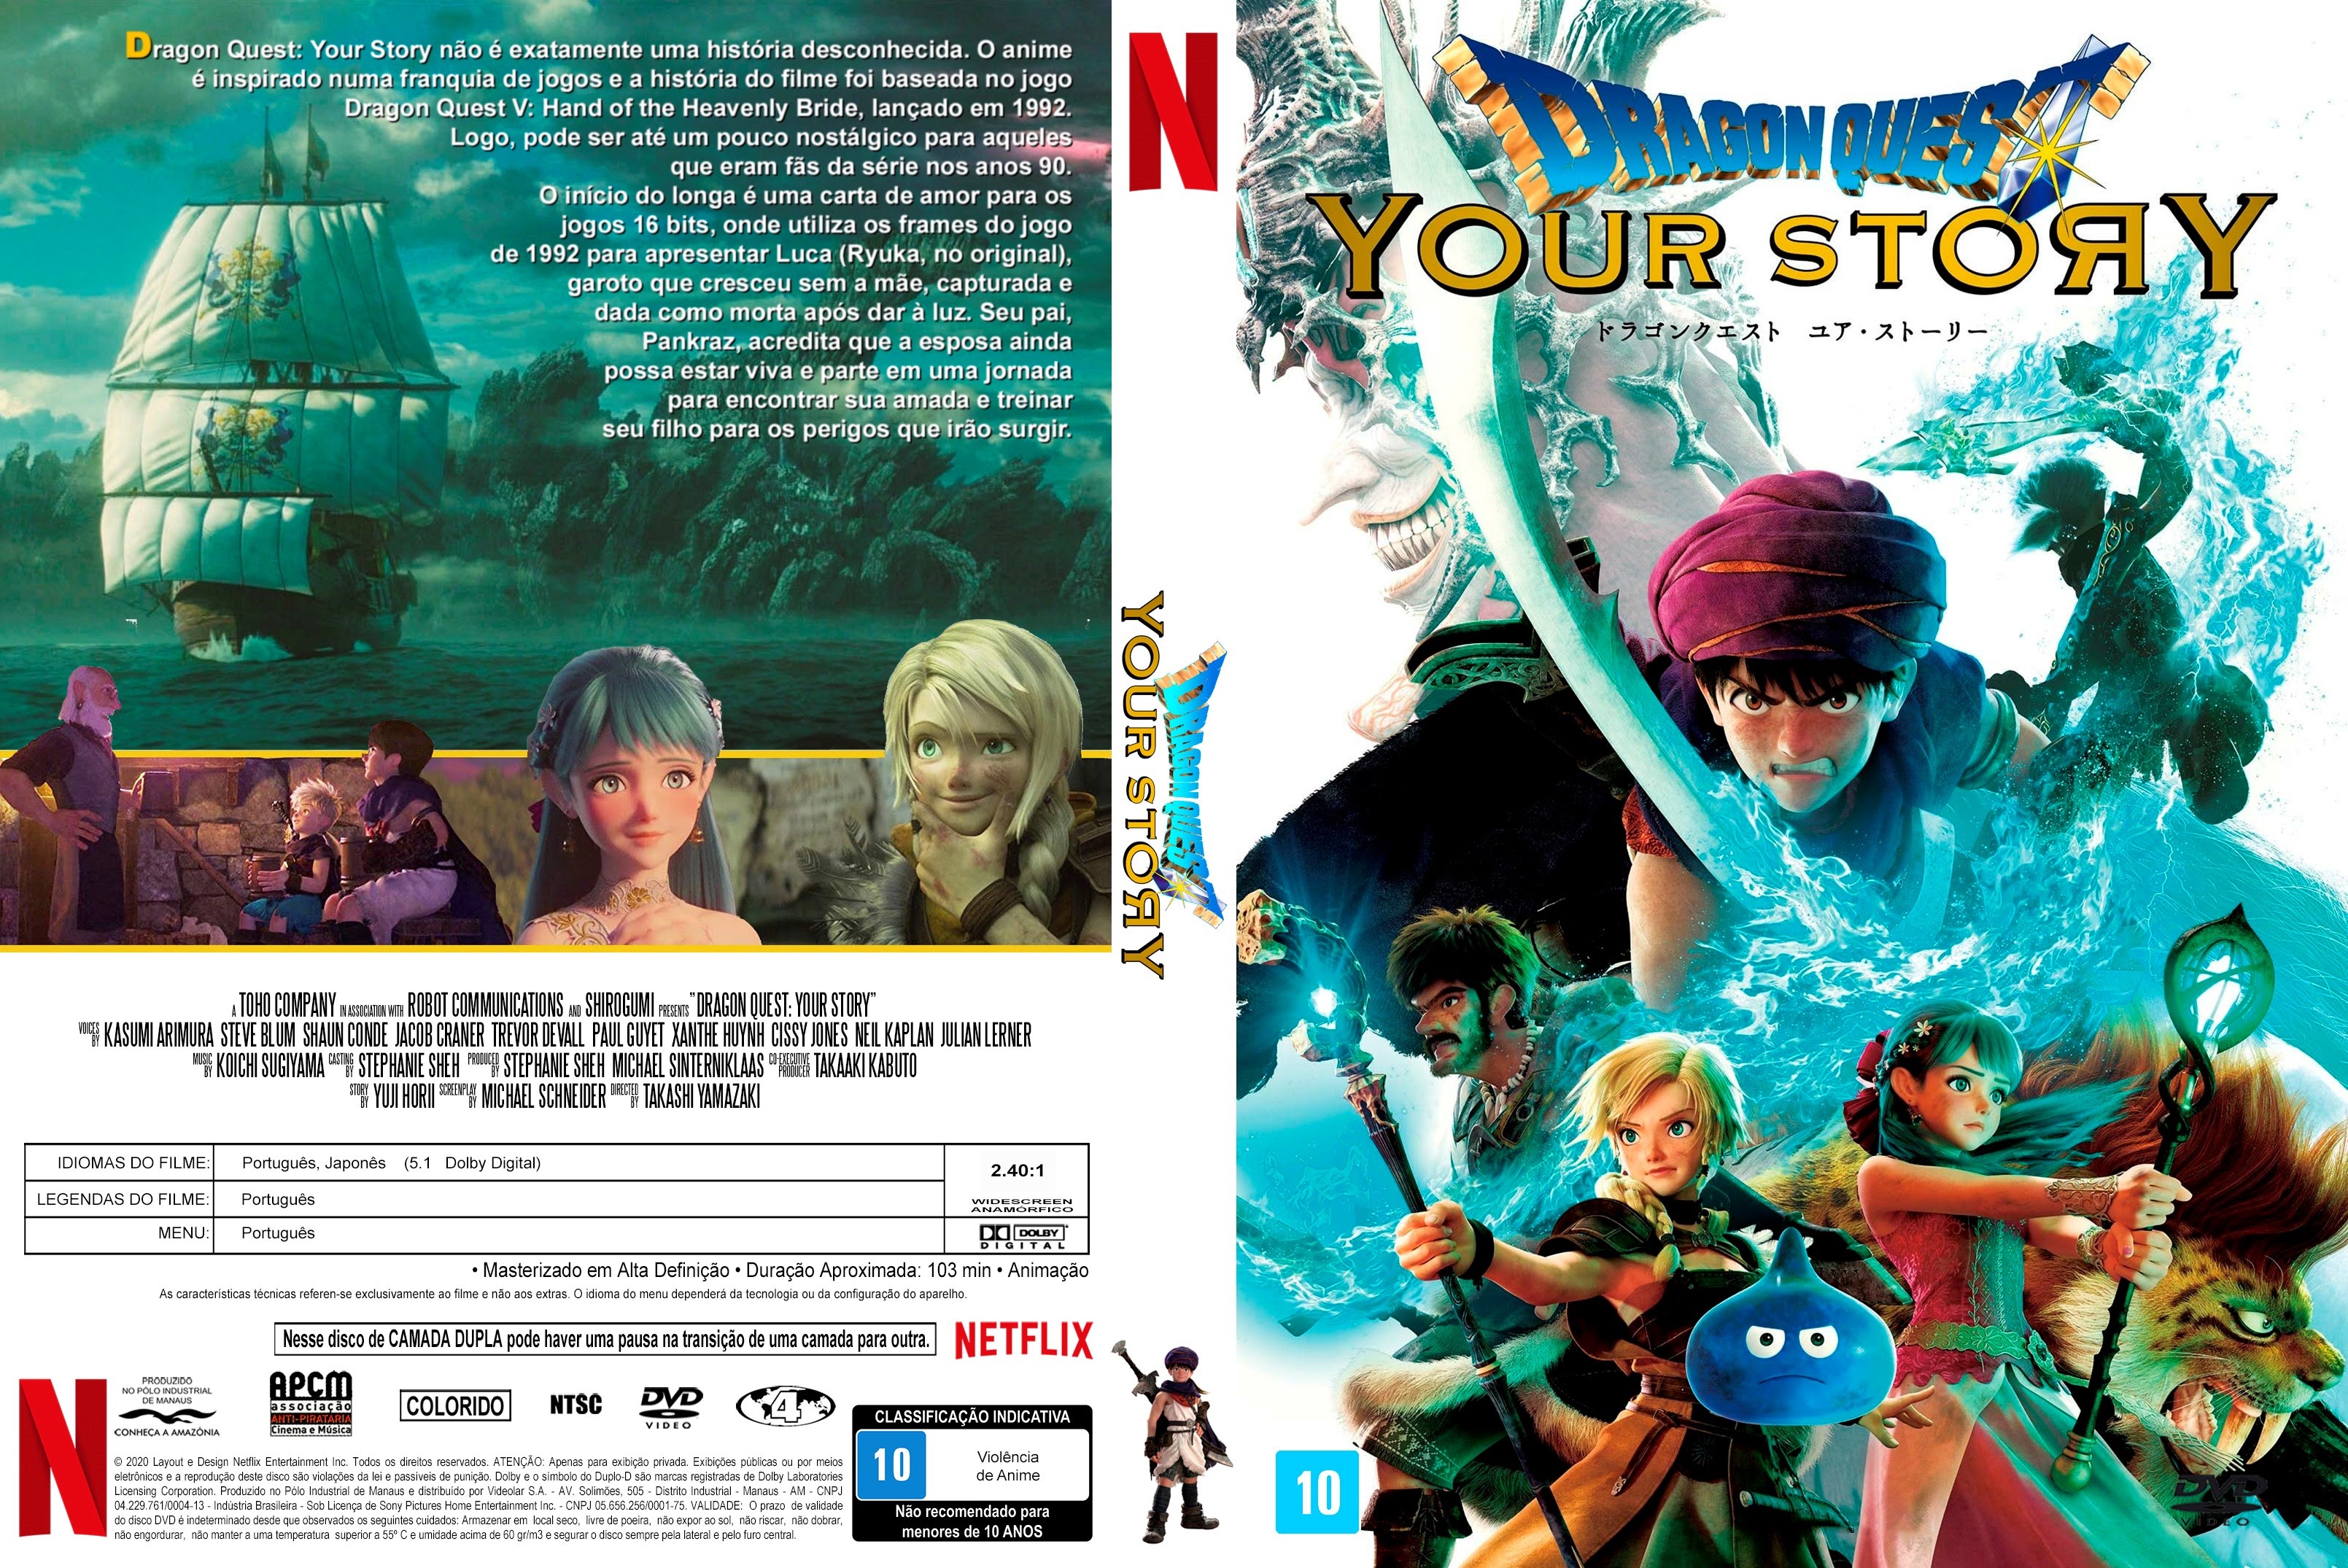 TRAILER DUBLADO] Dragon Quest: Your Story